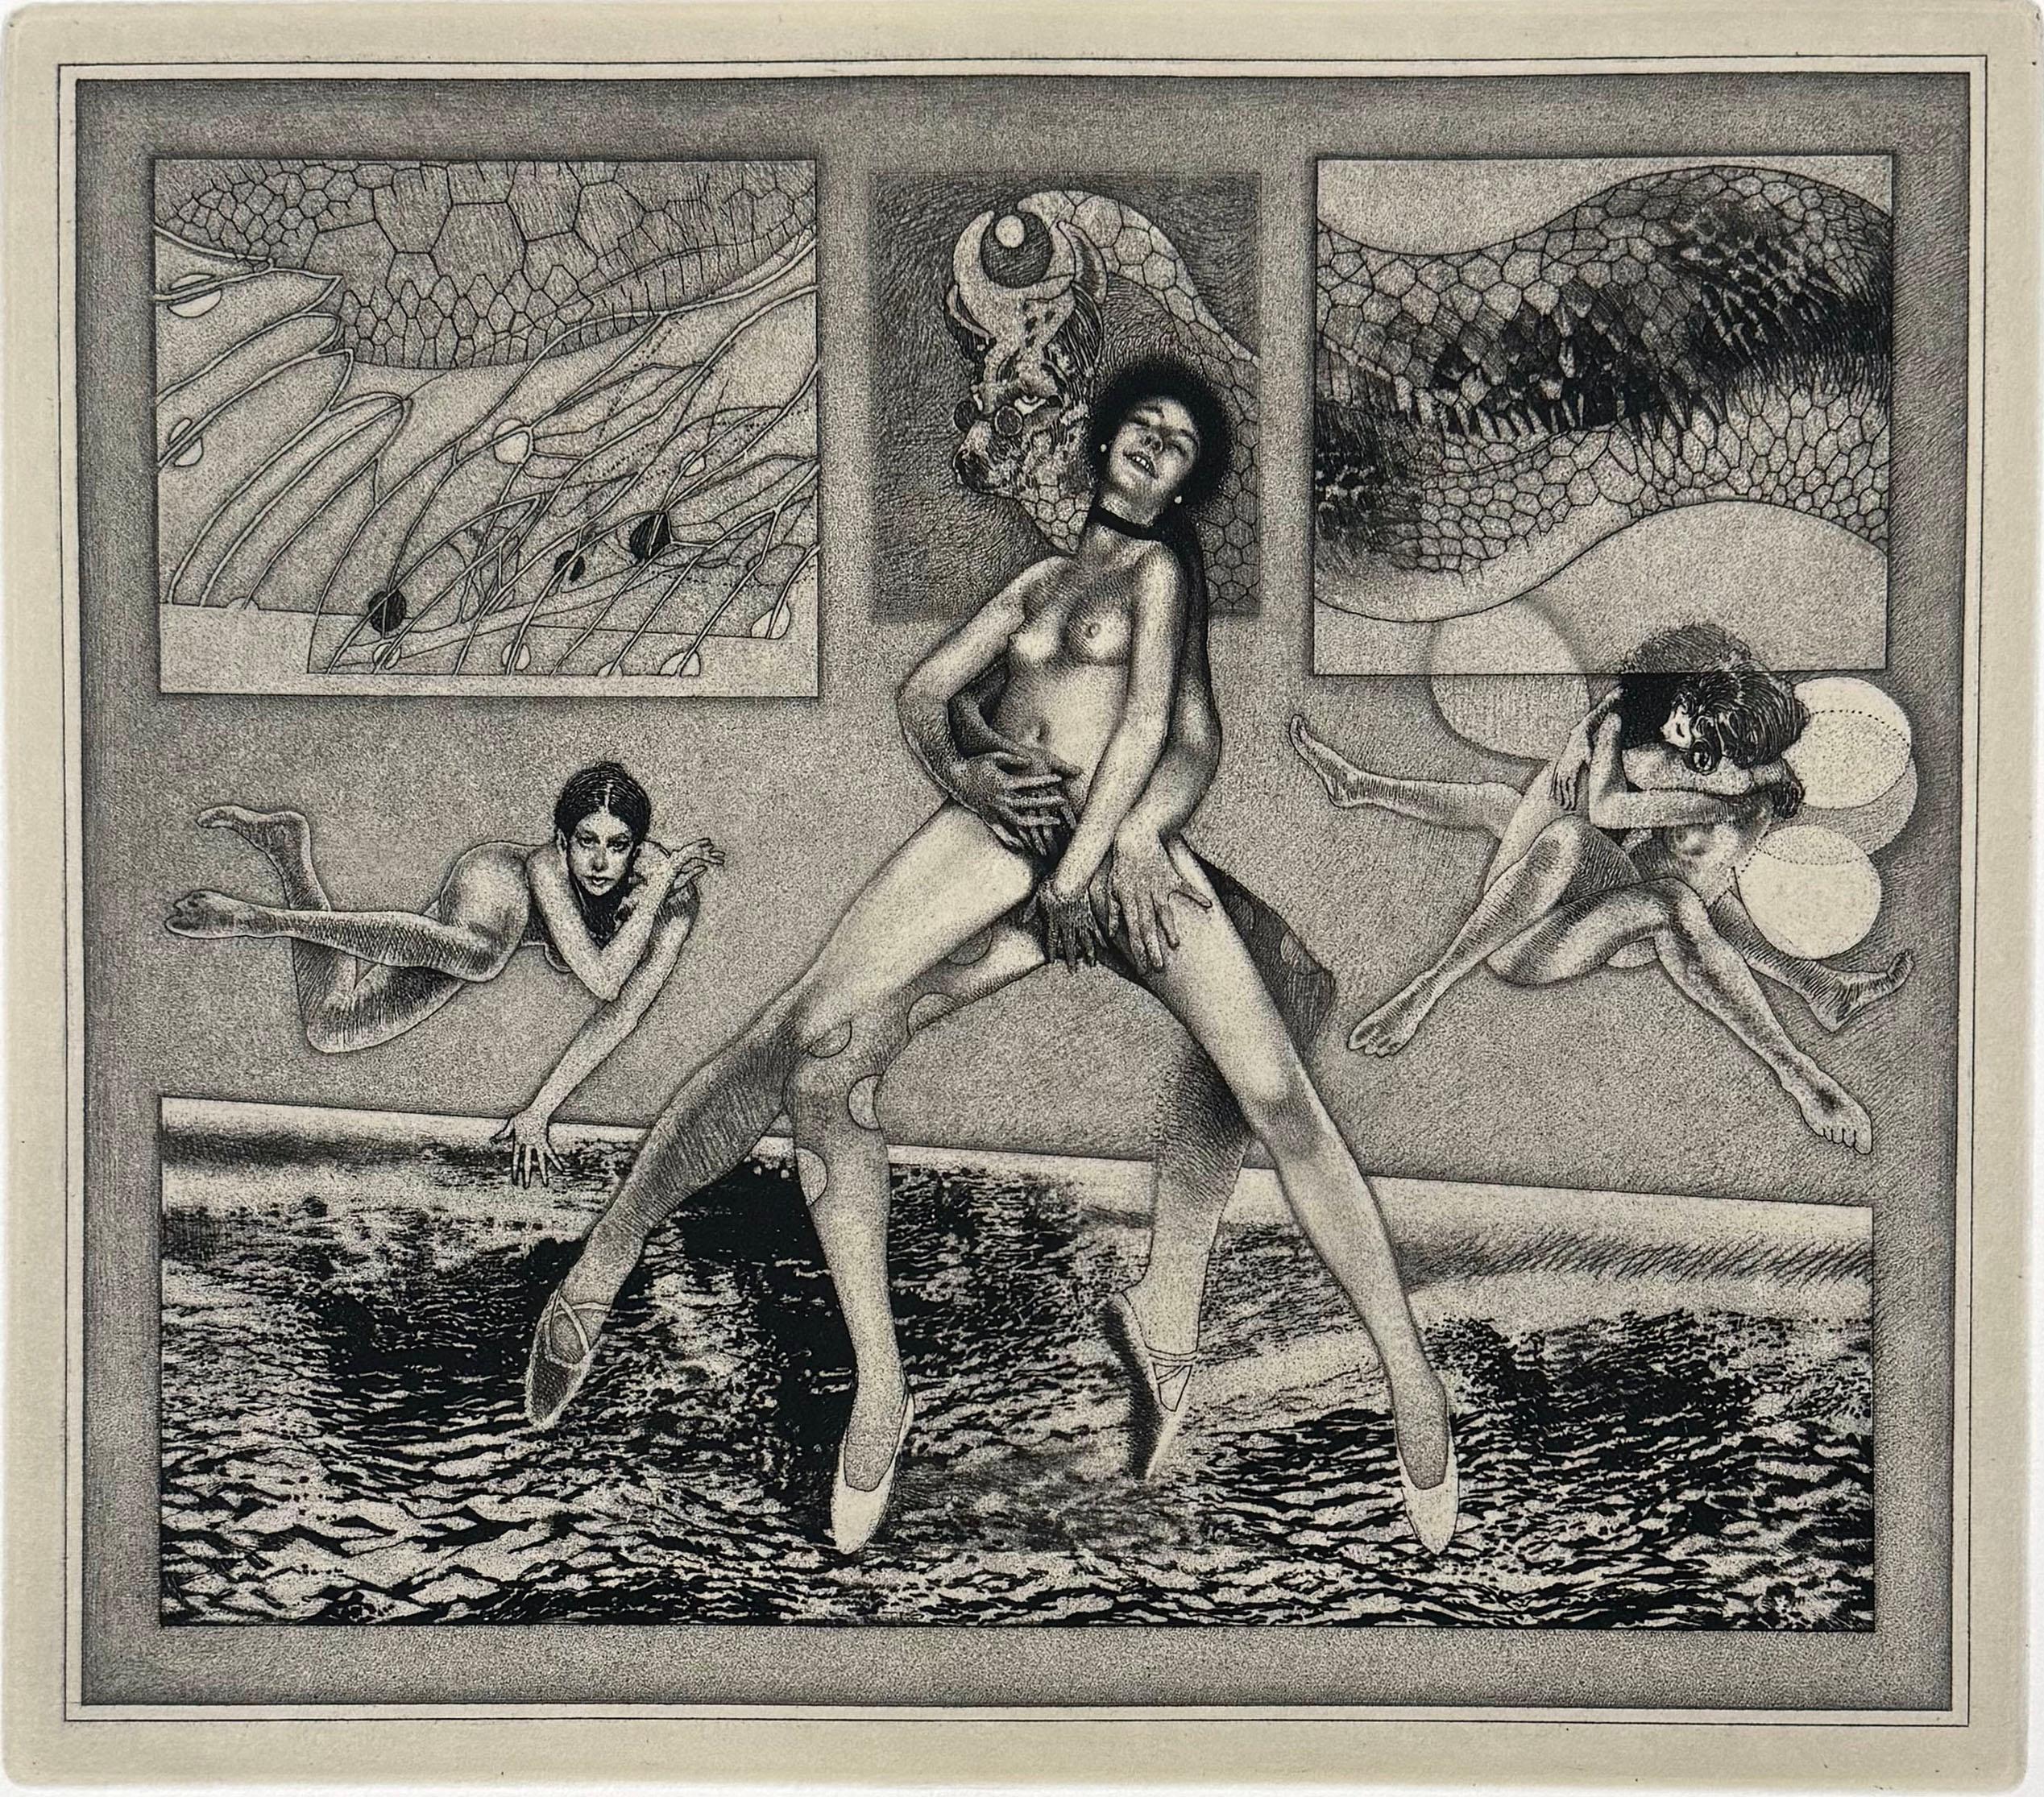 Resistgrundätzung und -gravur von einer Kupferplatte auf BFK Rives, Somerset Buff, Velinpapier
Medium: Resistgrund-Radierung & -Gravur    
Auflage von 125 Stück        
Jahr: 1982

Eines aus einer Gruppe von eher sinnlichen oder erotischen Bildern,